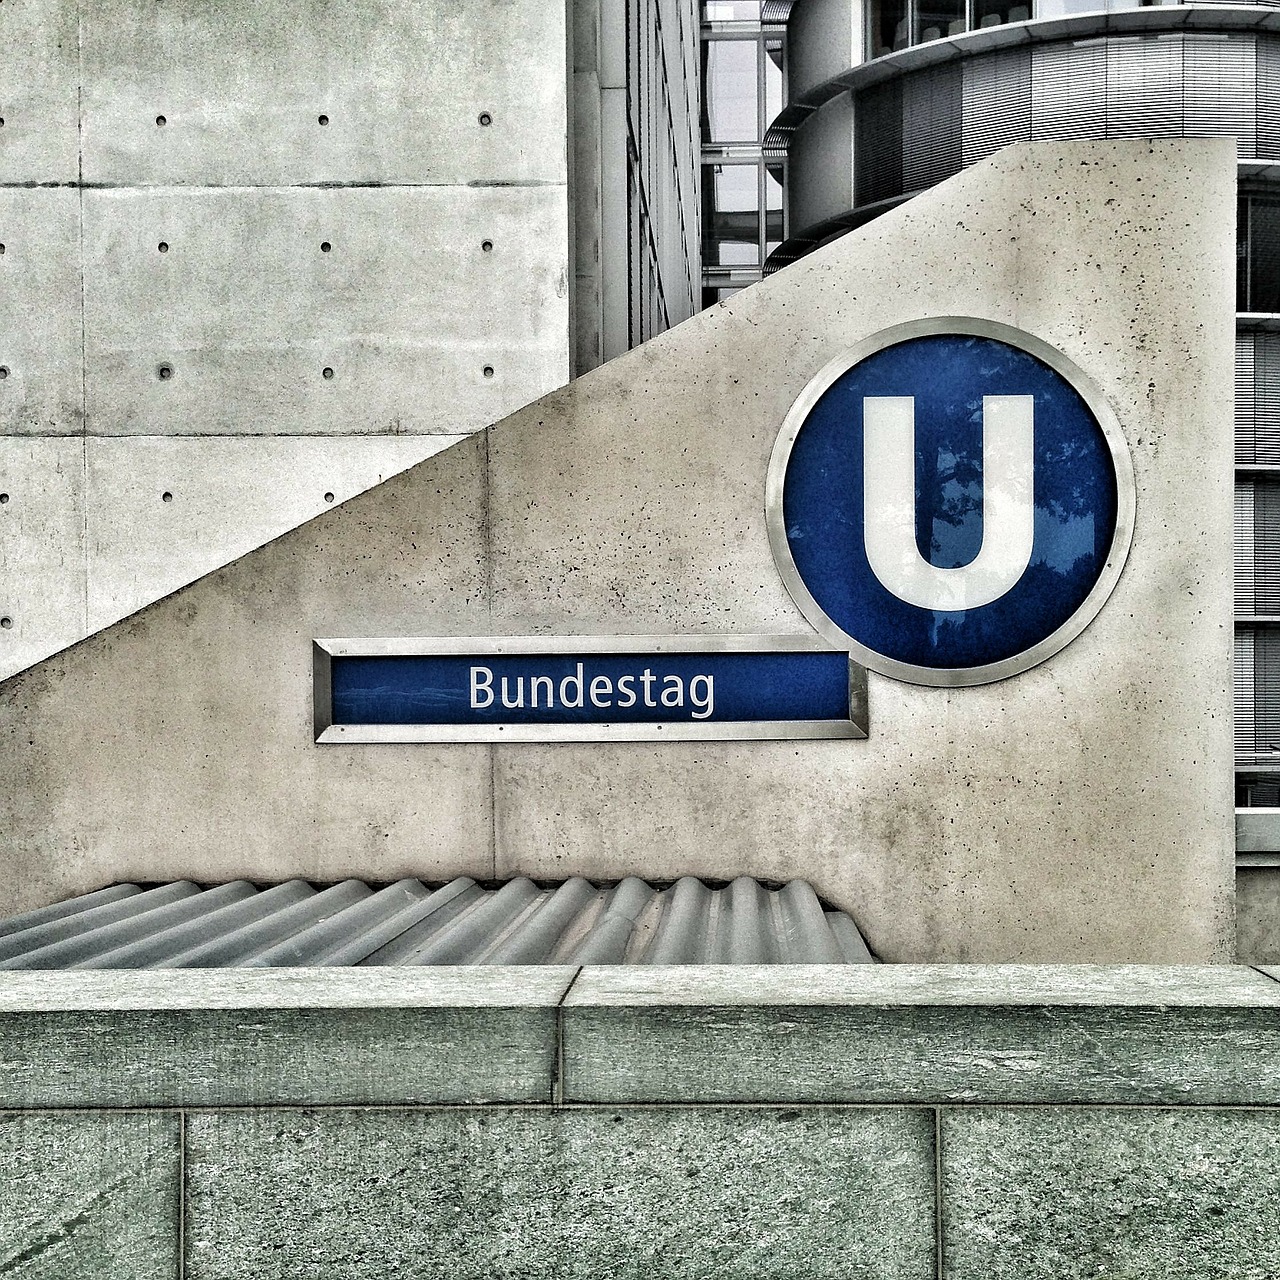 linhas arquitetônicas retas de uma estação de metrô na Alemanha